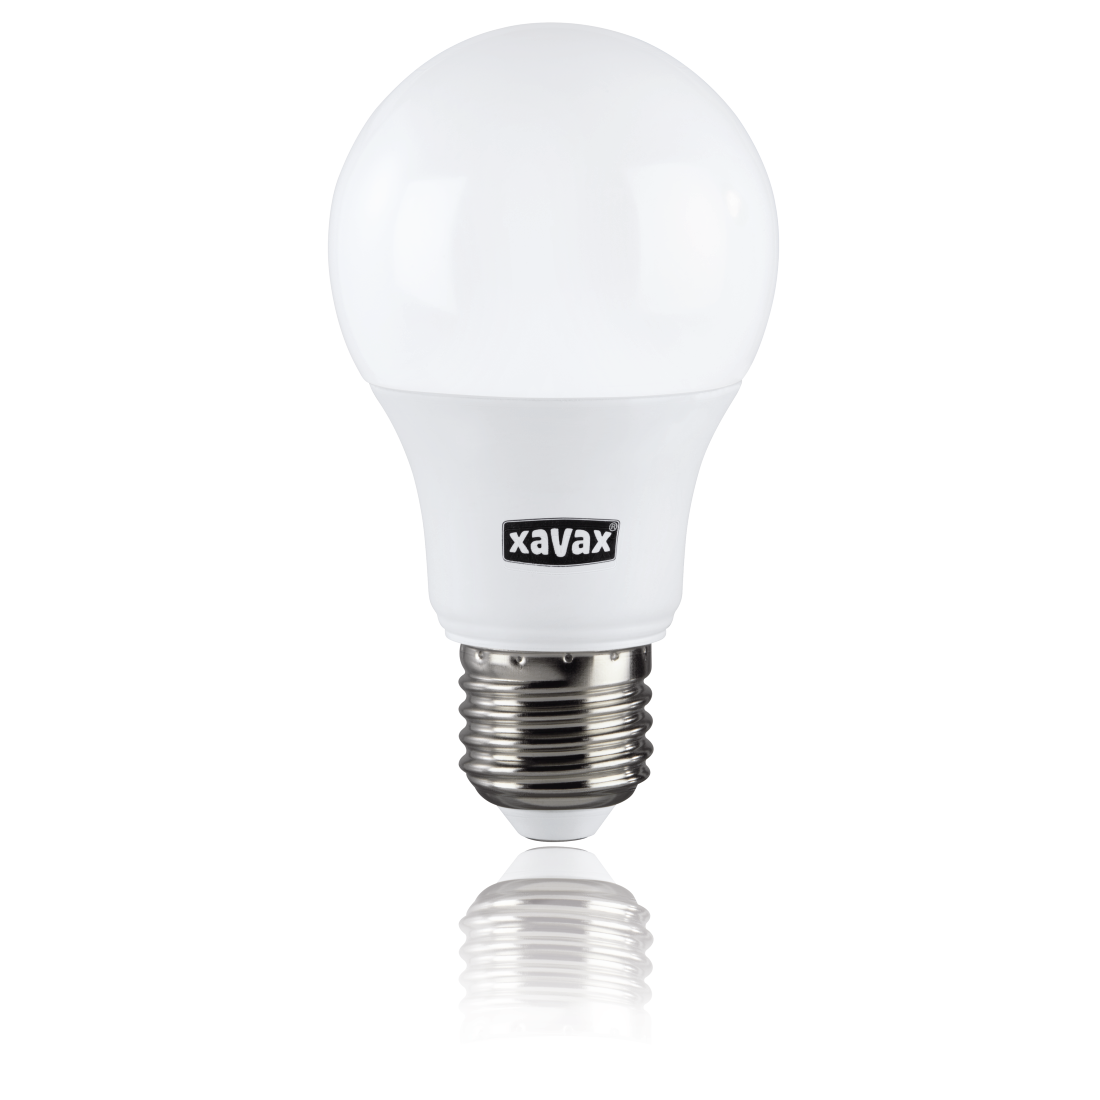 abx2 Druckfähige Abbildung 2 - Xavax, LED-Lampe, E27, 806lm ersetzt 60W, Glühlampe, Tageslicht